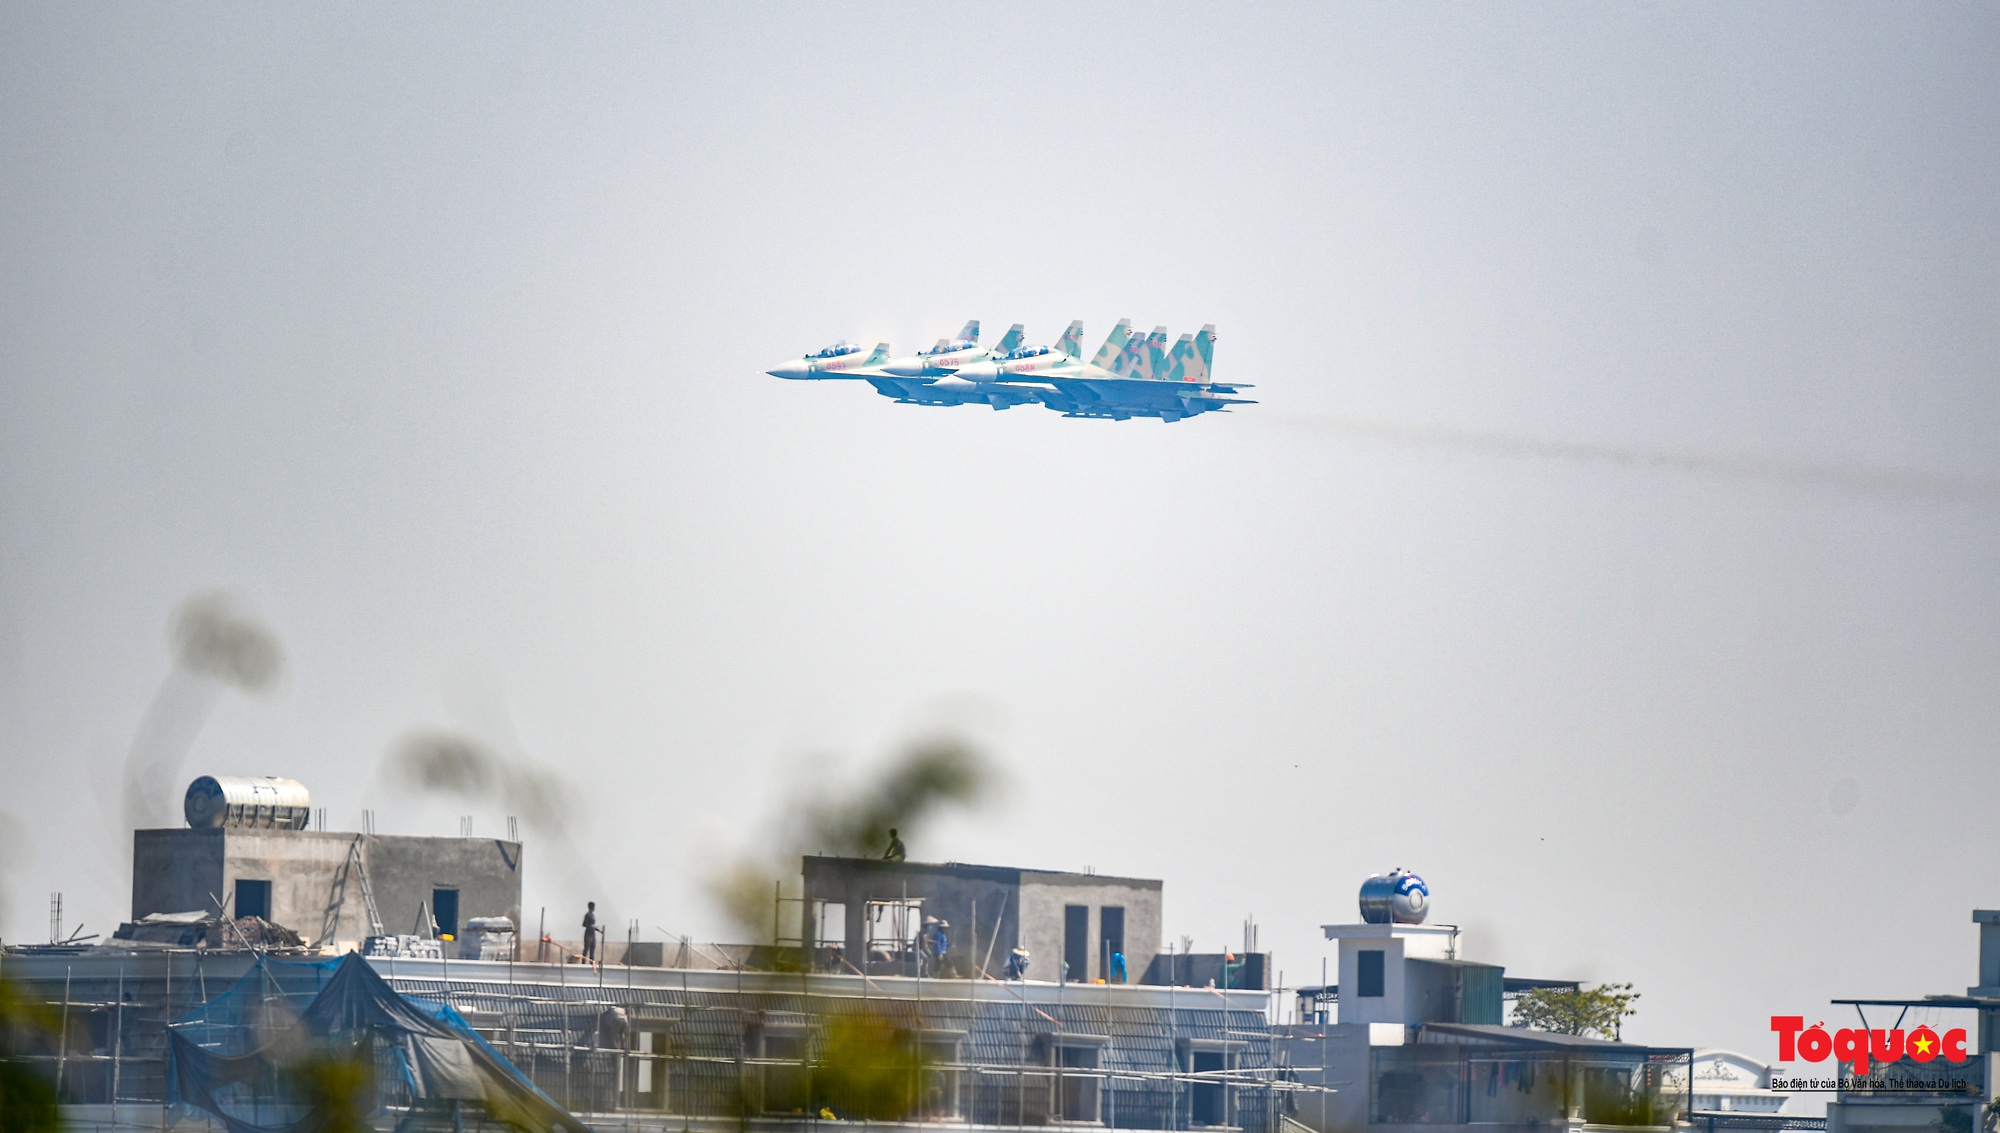 Mãn nhãn với  máy bay chiến đấu Sukhoi và trực thăng Mi thao diễn trên bầu trời Thủ đô Hà Nội - Ảnh 6.